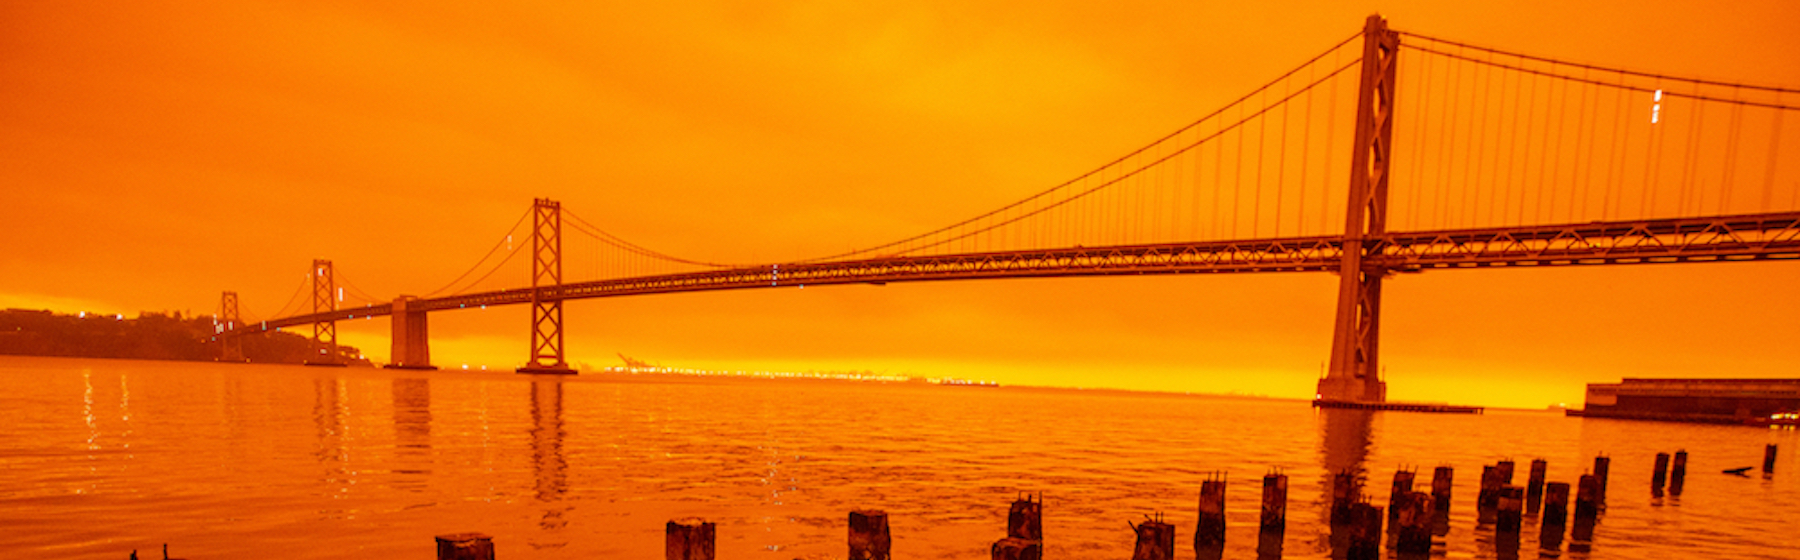 Lo spettacolo apocalittico del cielo arancione per gli incendi in California